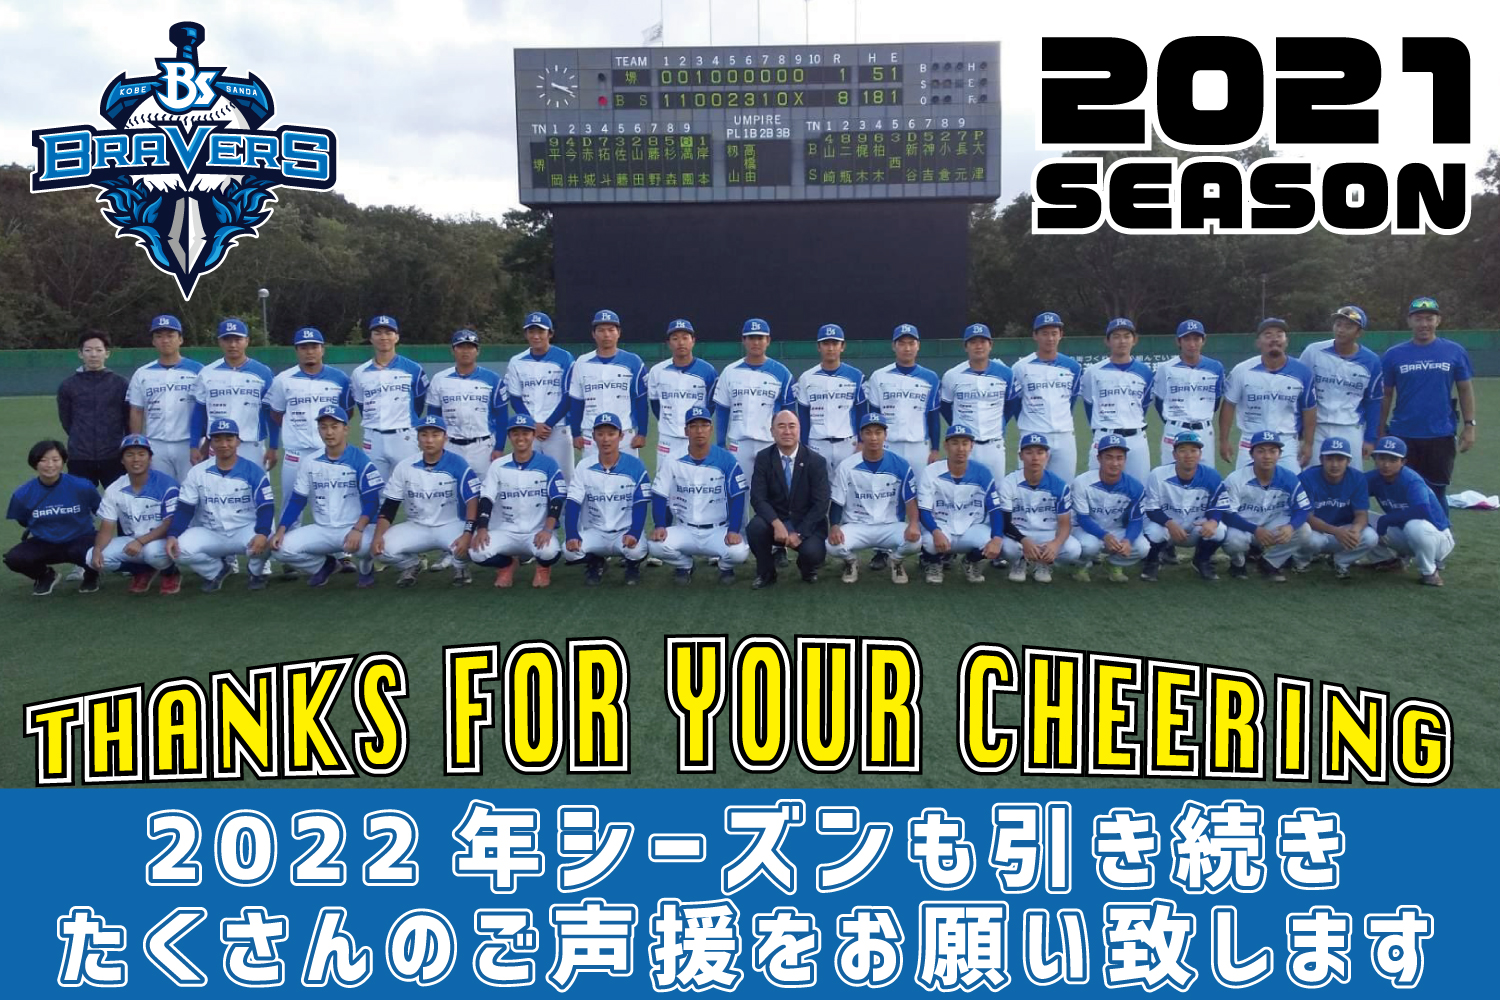 兵庫ブレイバーズ 公式サイト | 神戸三田を拠点に活動する、さわかみ関西独立リーグに所属する野球チームです